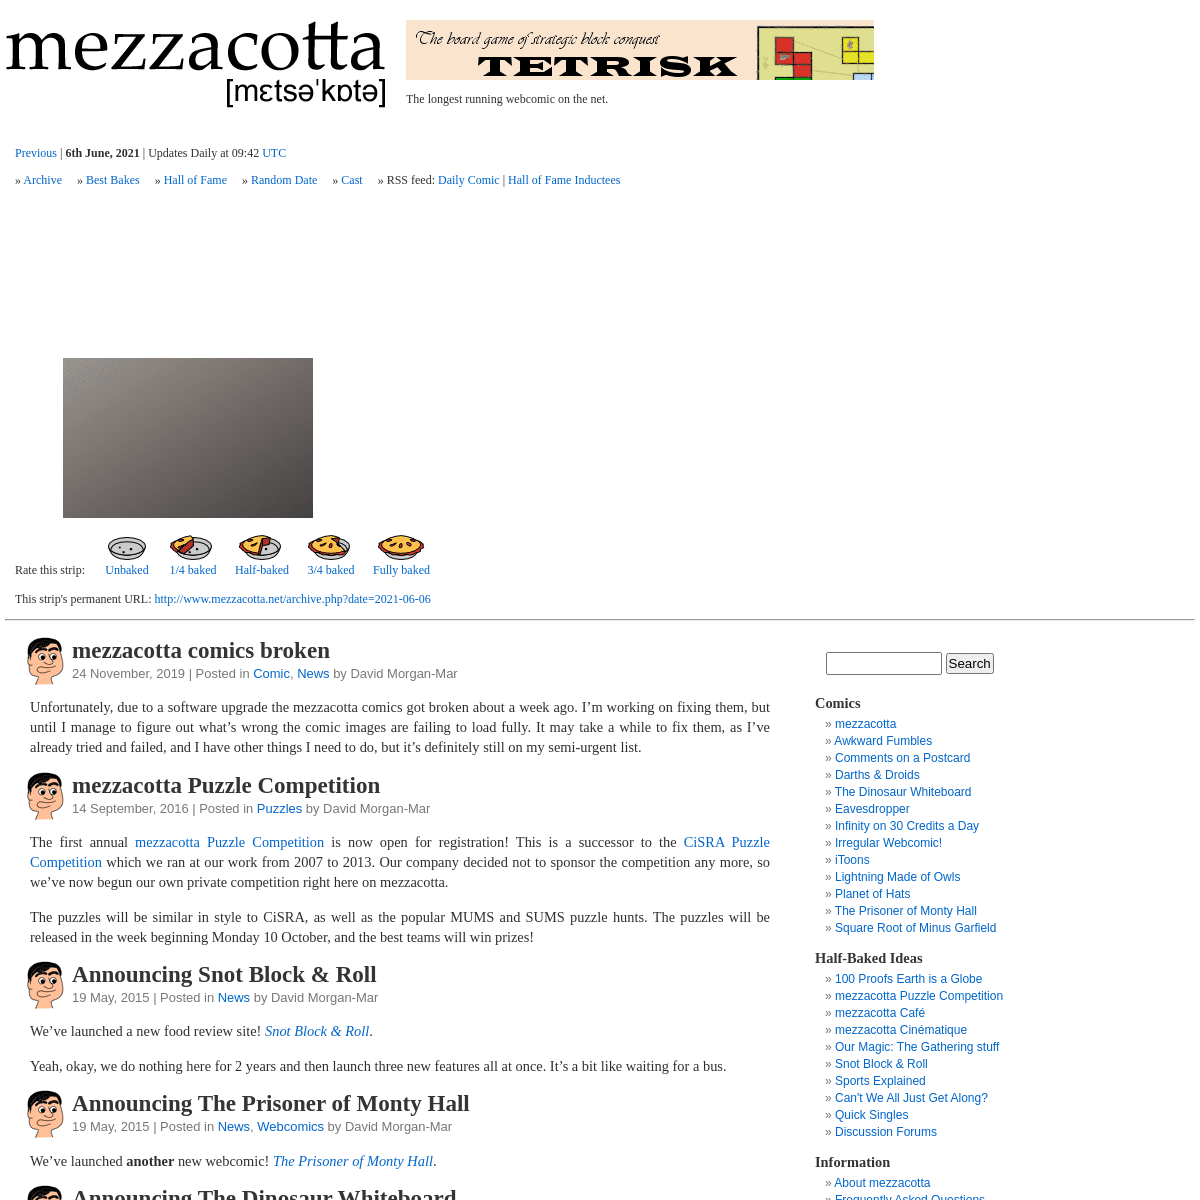 A complete backup of https://mezzacotta.net